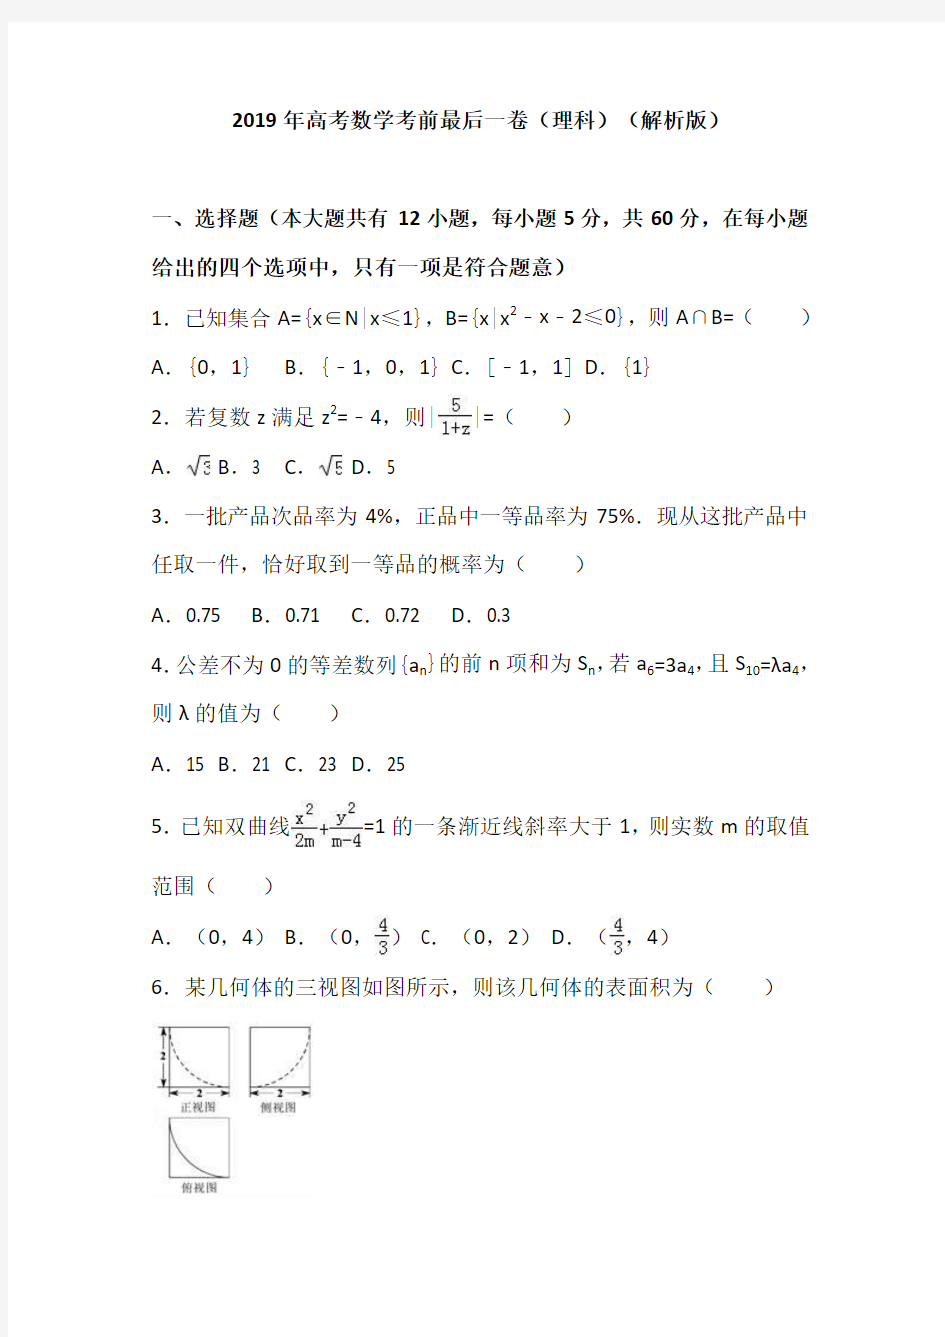 2019年福建省高考数学考前最后一卷(理科)(解析版)